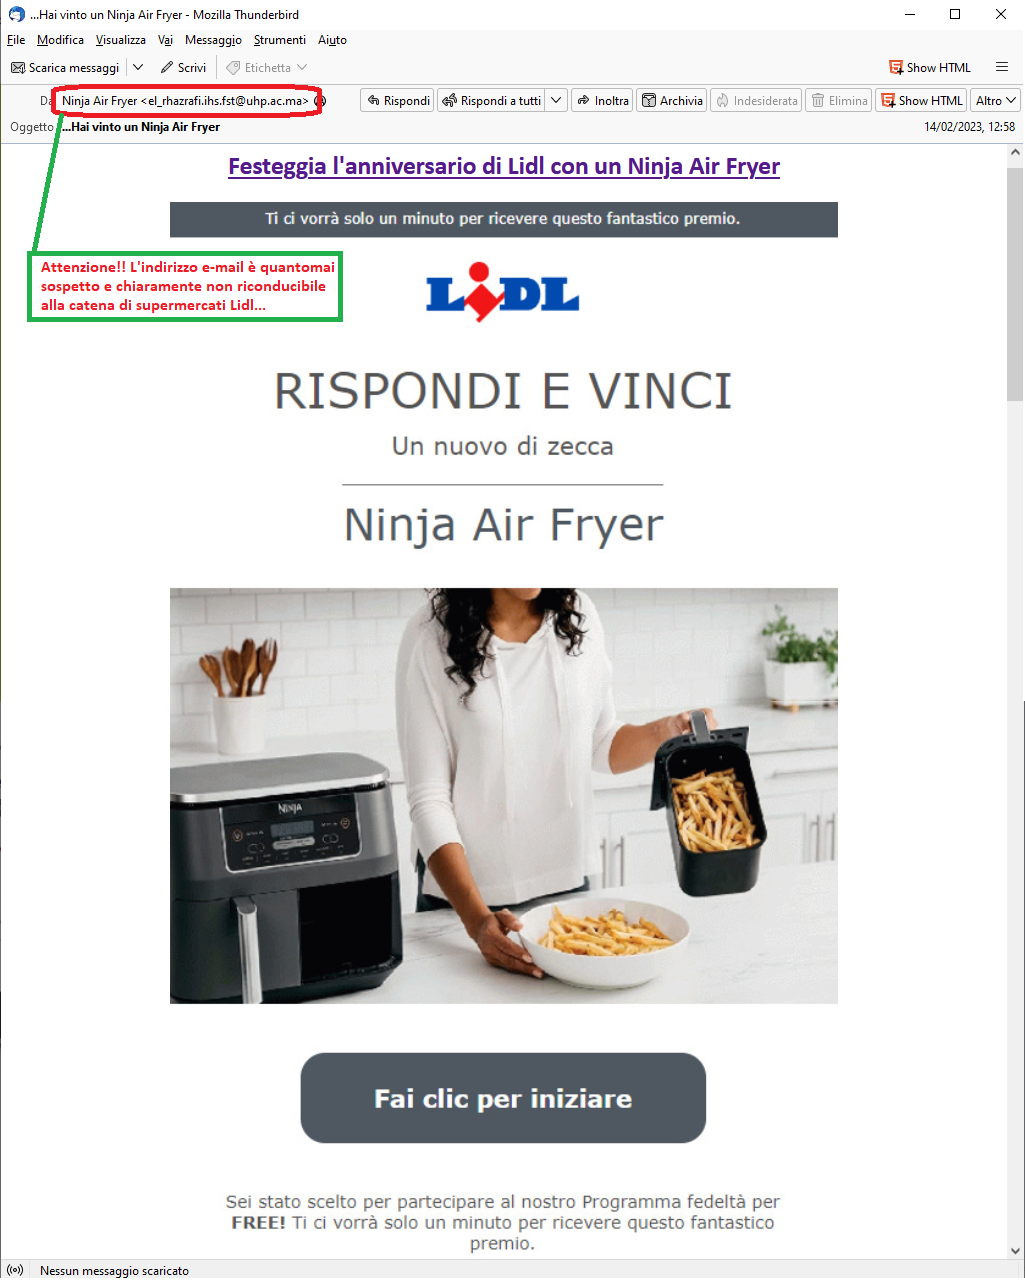 Clicca per ingrandire l'immagine del falsa e-mail che sembra provenire da LIDL, che informa della possibilità di vincere un Ninja Air Frayer...in realtà si tratta di una TRUFFA!